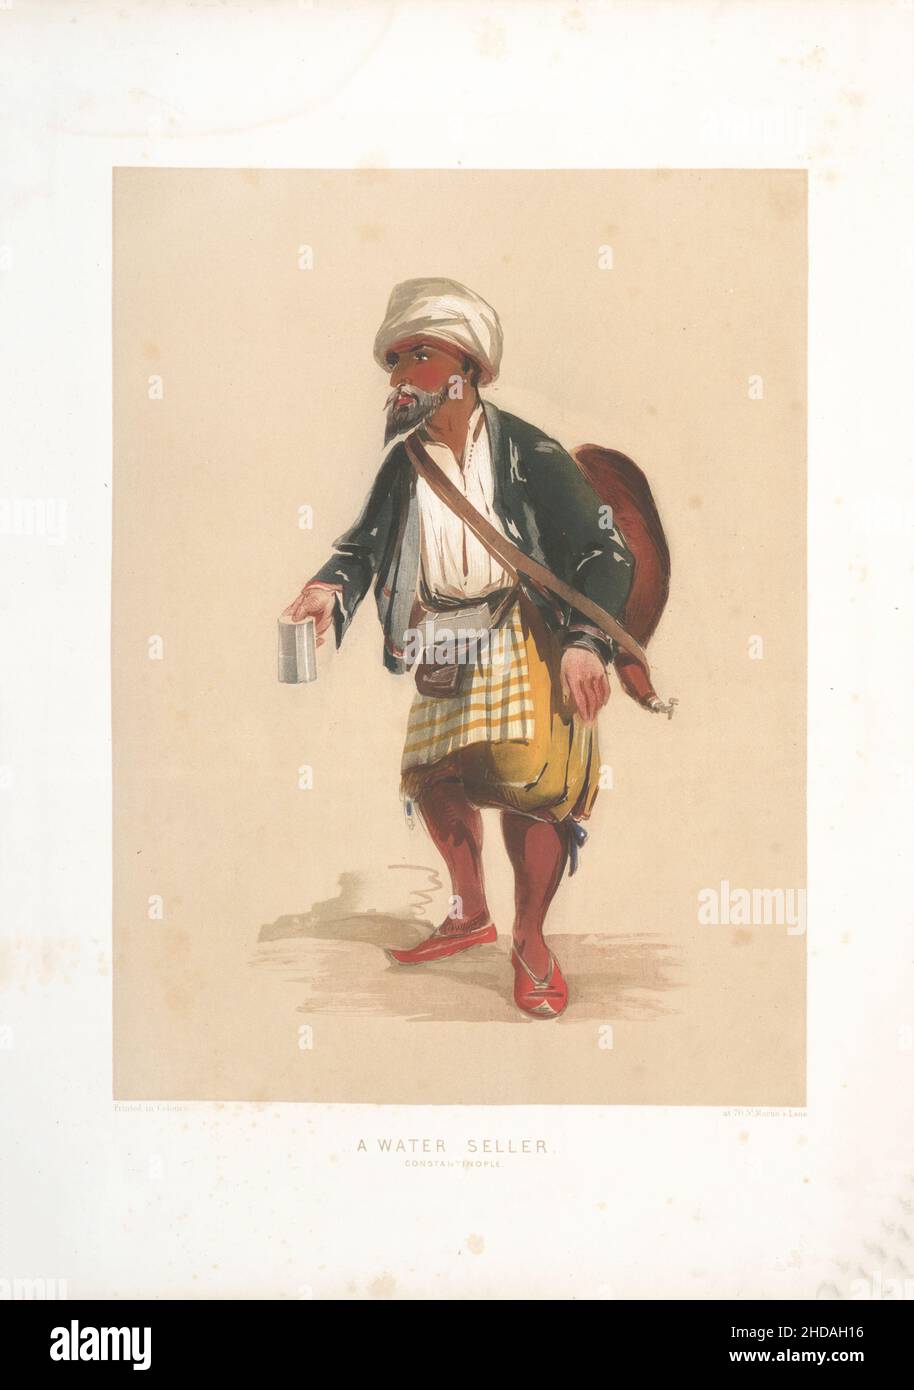 Litografia vintage a colori dell'Impero Ottomano: Il venditore d'acqua, Costantinopoli 1854, di Forbes Mac Bean (artista) e Justin Sutcliffe (litografo) Foto Stock